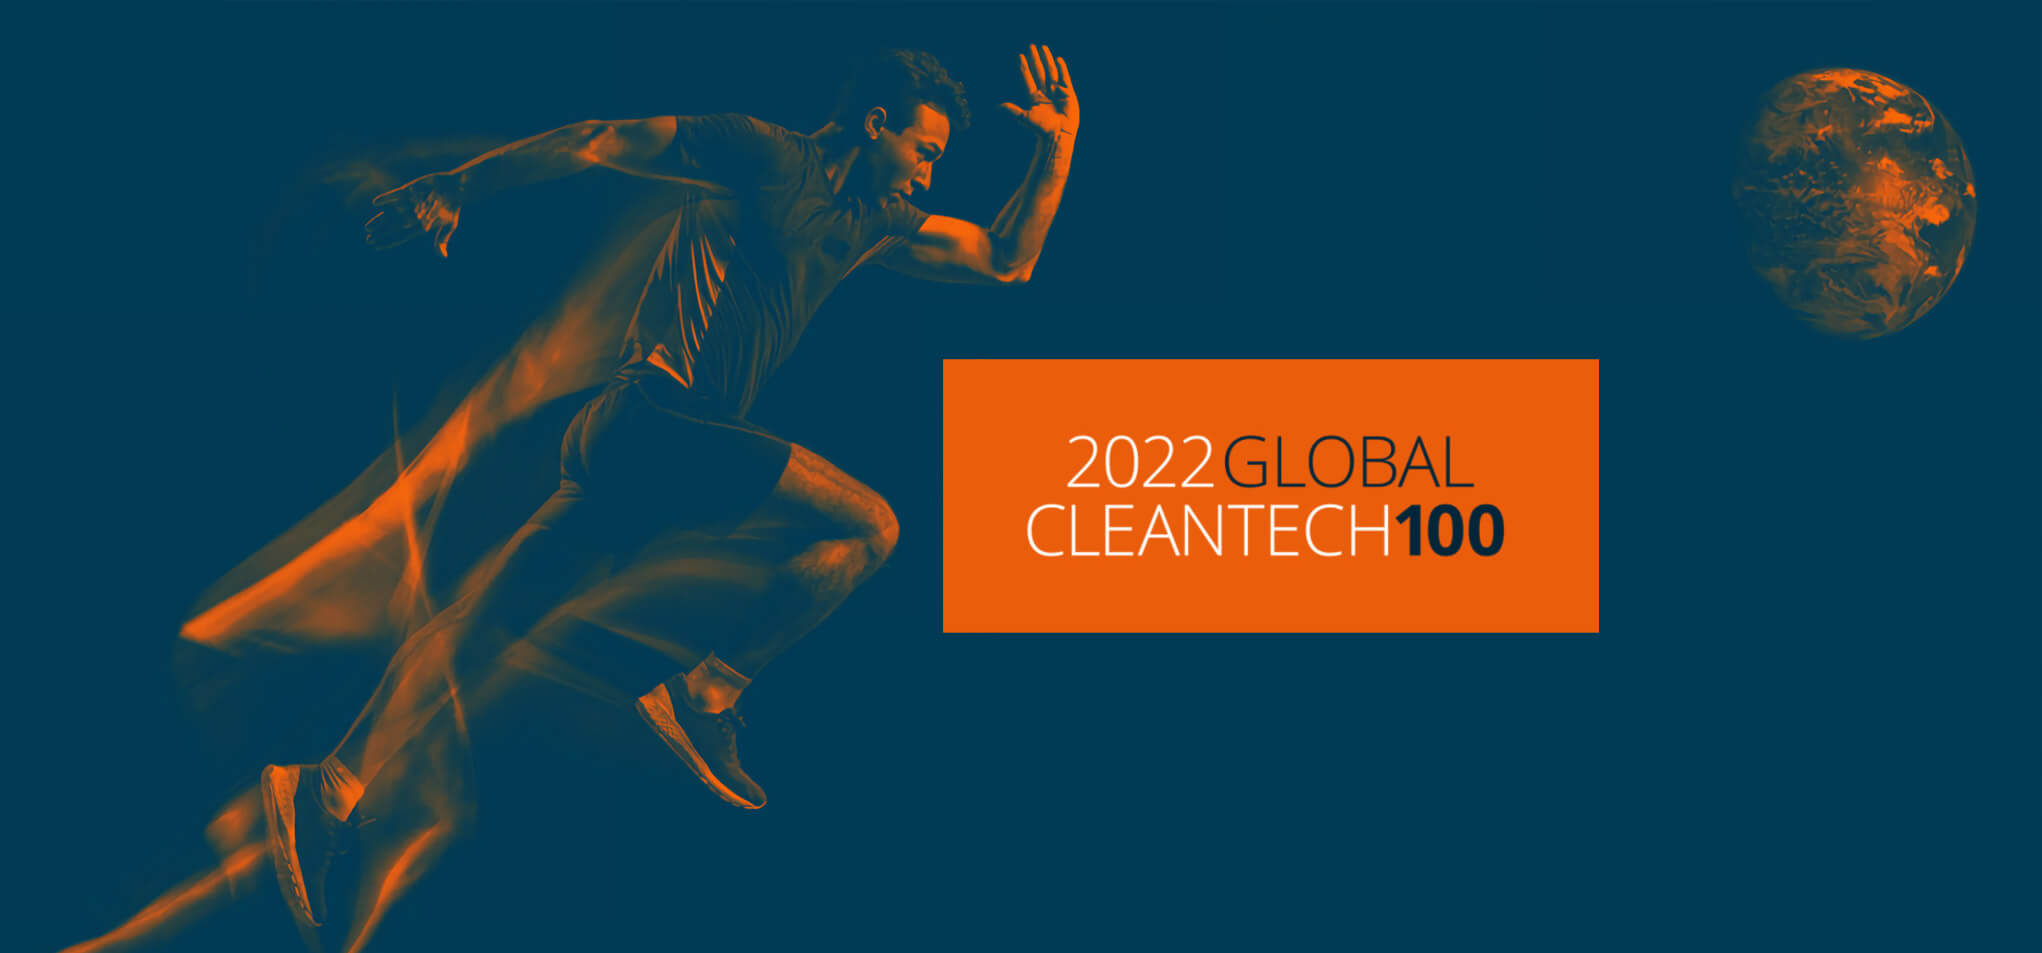 Global Cleantech 100 - 2022